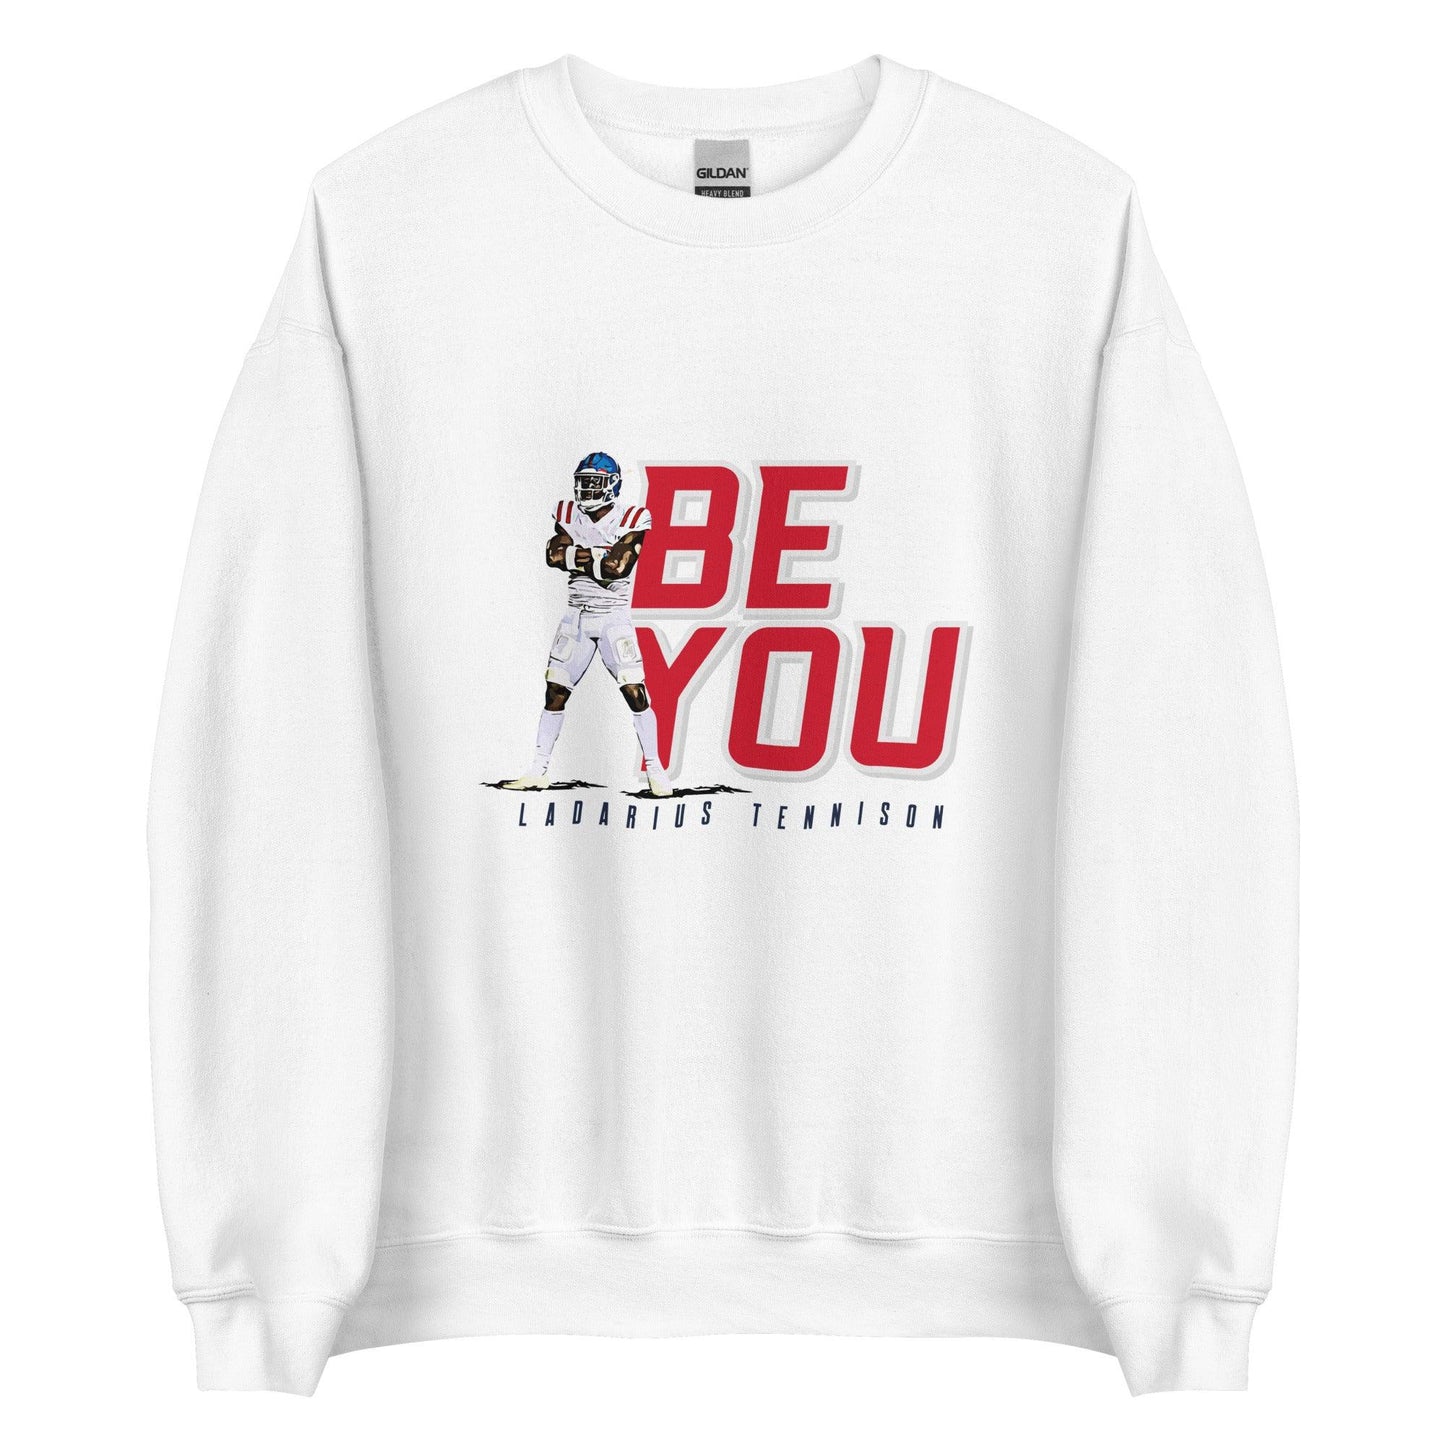 Ladarius Tennison "Be You" Sweatshirt - Fan Arch